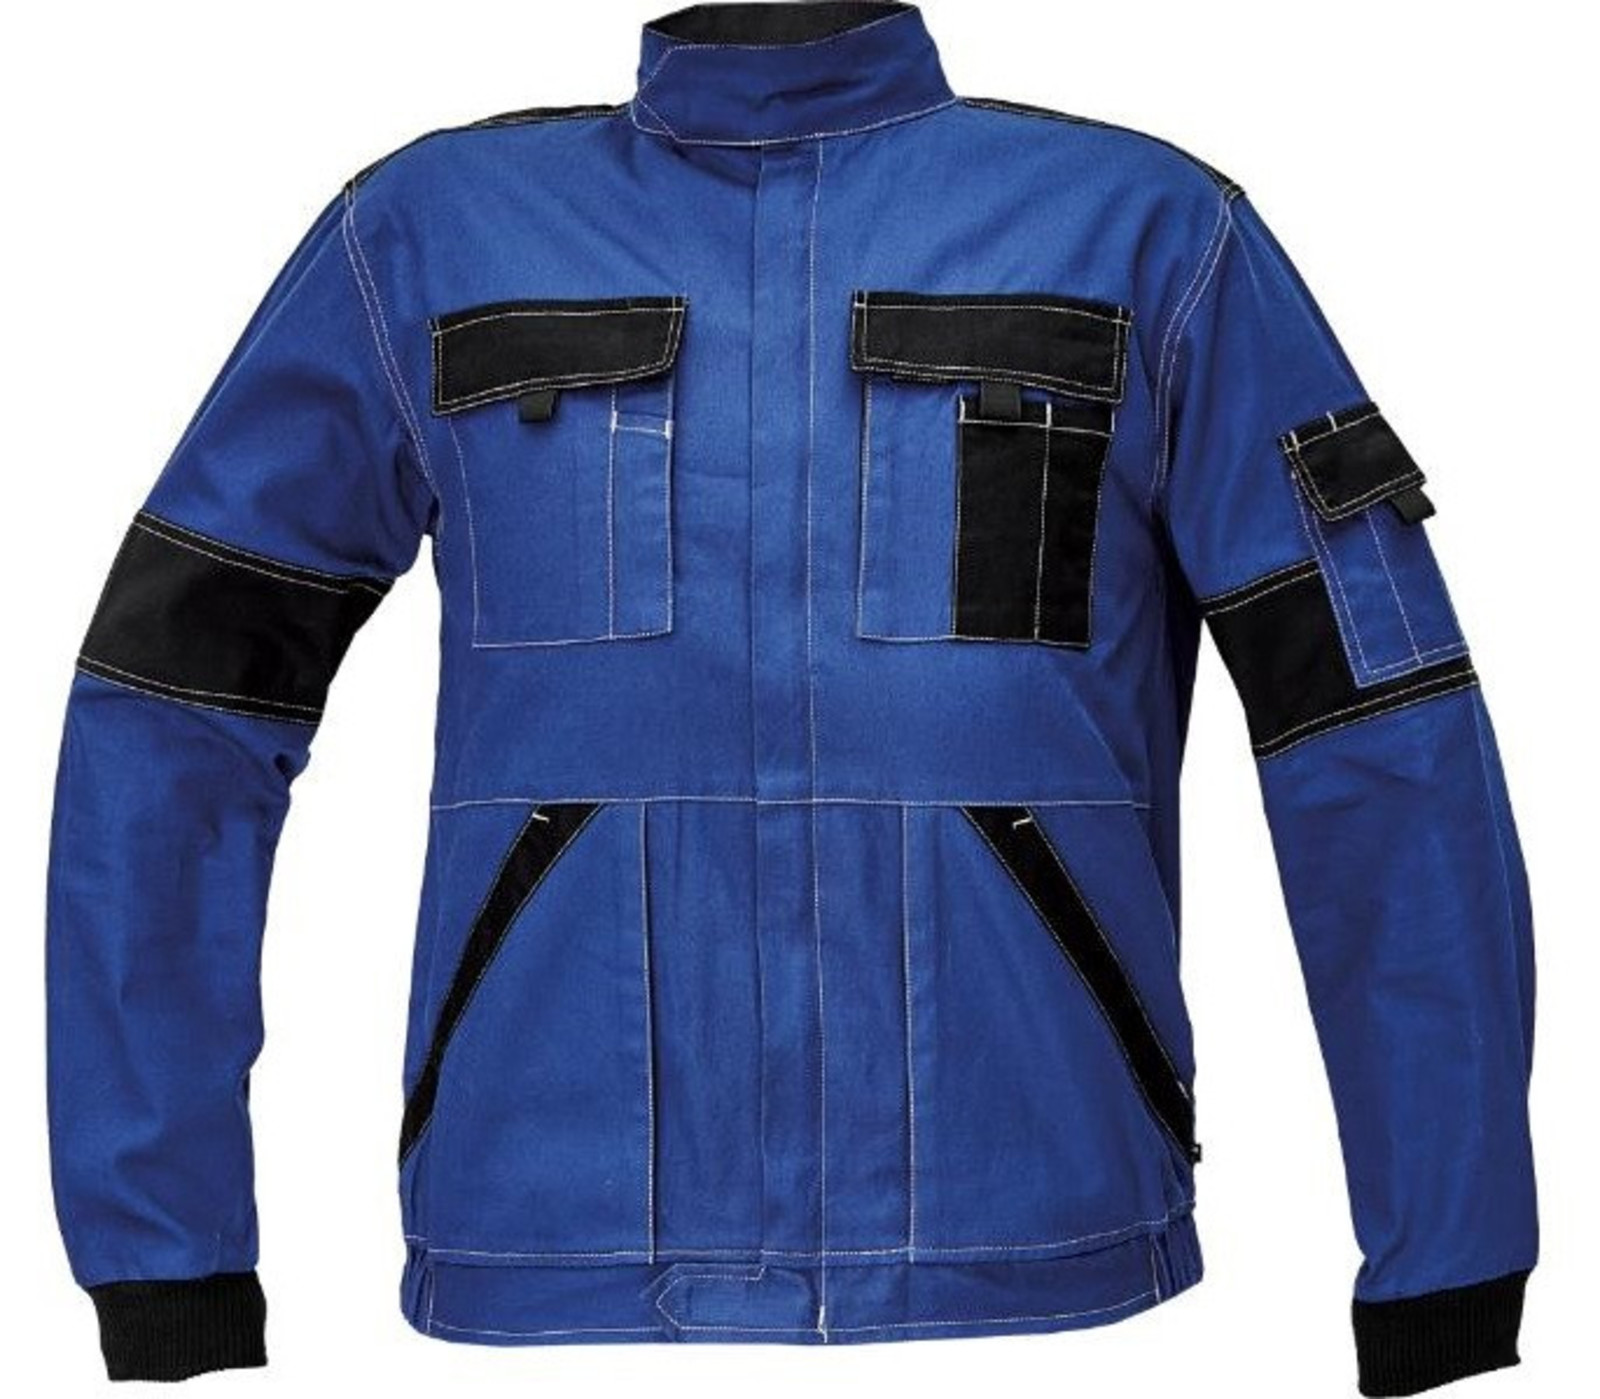 Tenšia bavlnená montérková bunda Max Summer  - veľkosť: 62, farba: modrá/čierna